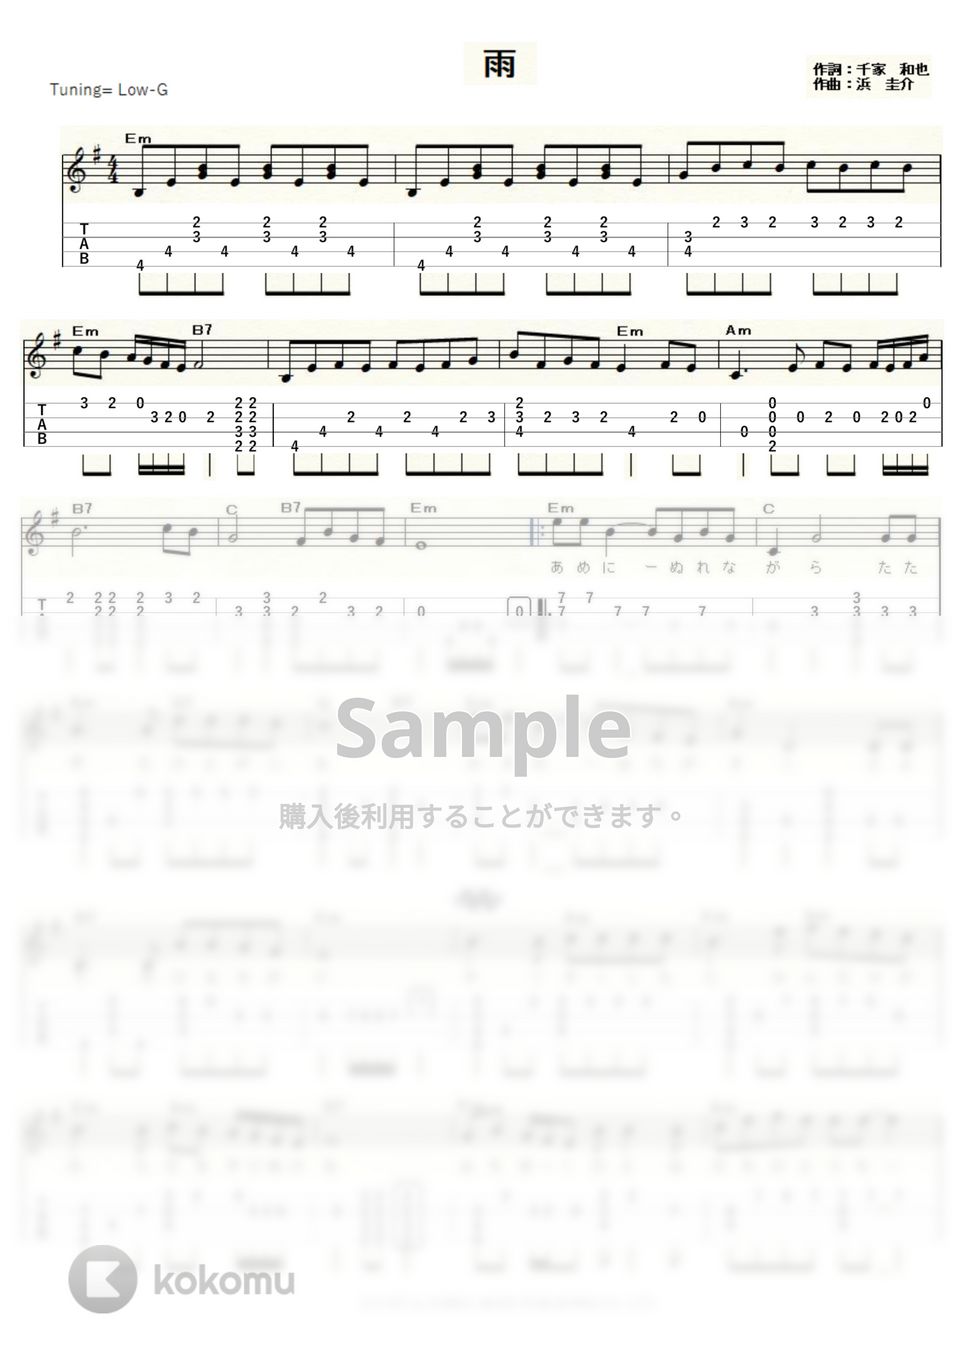 三善 英史 - 雨 (ｳｸﾚﾚｿﾛ/Low-G/中級) by ukulelepapa